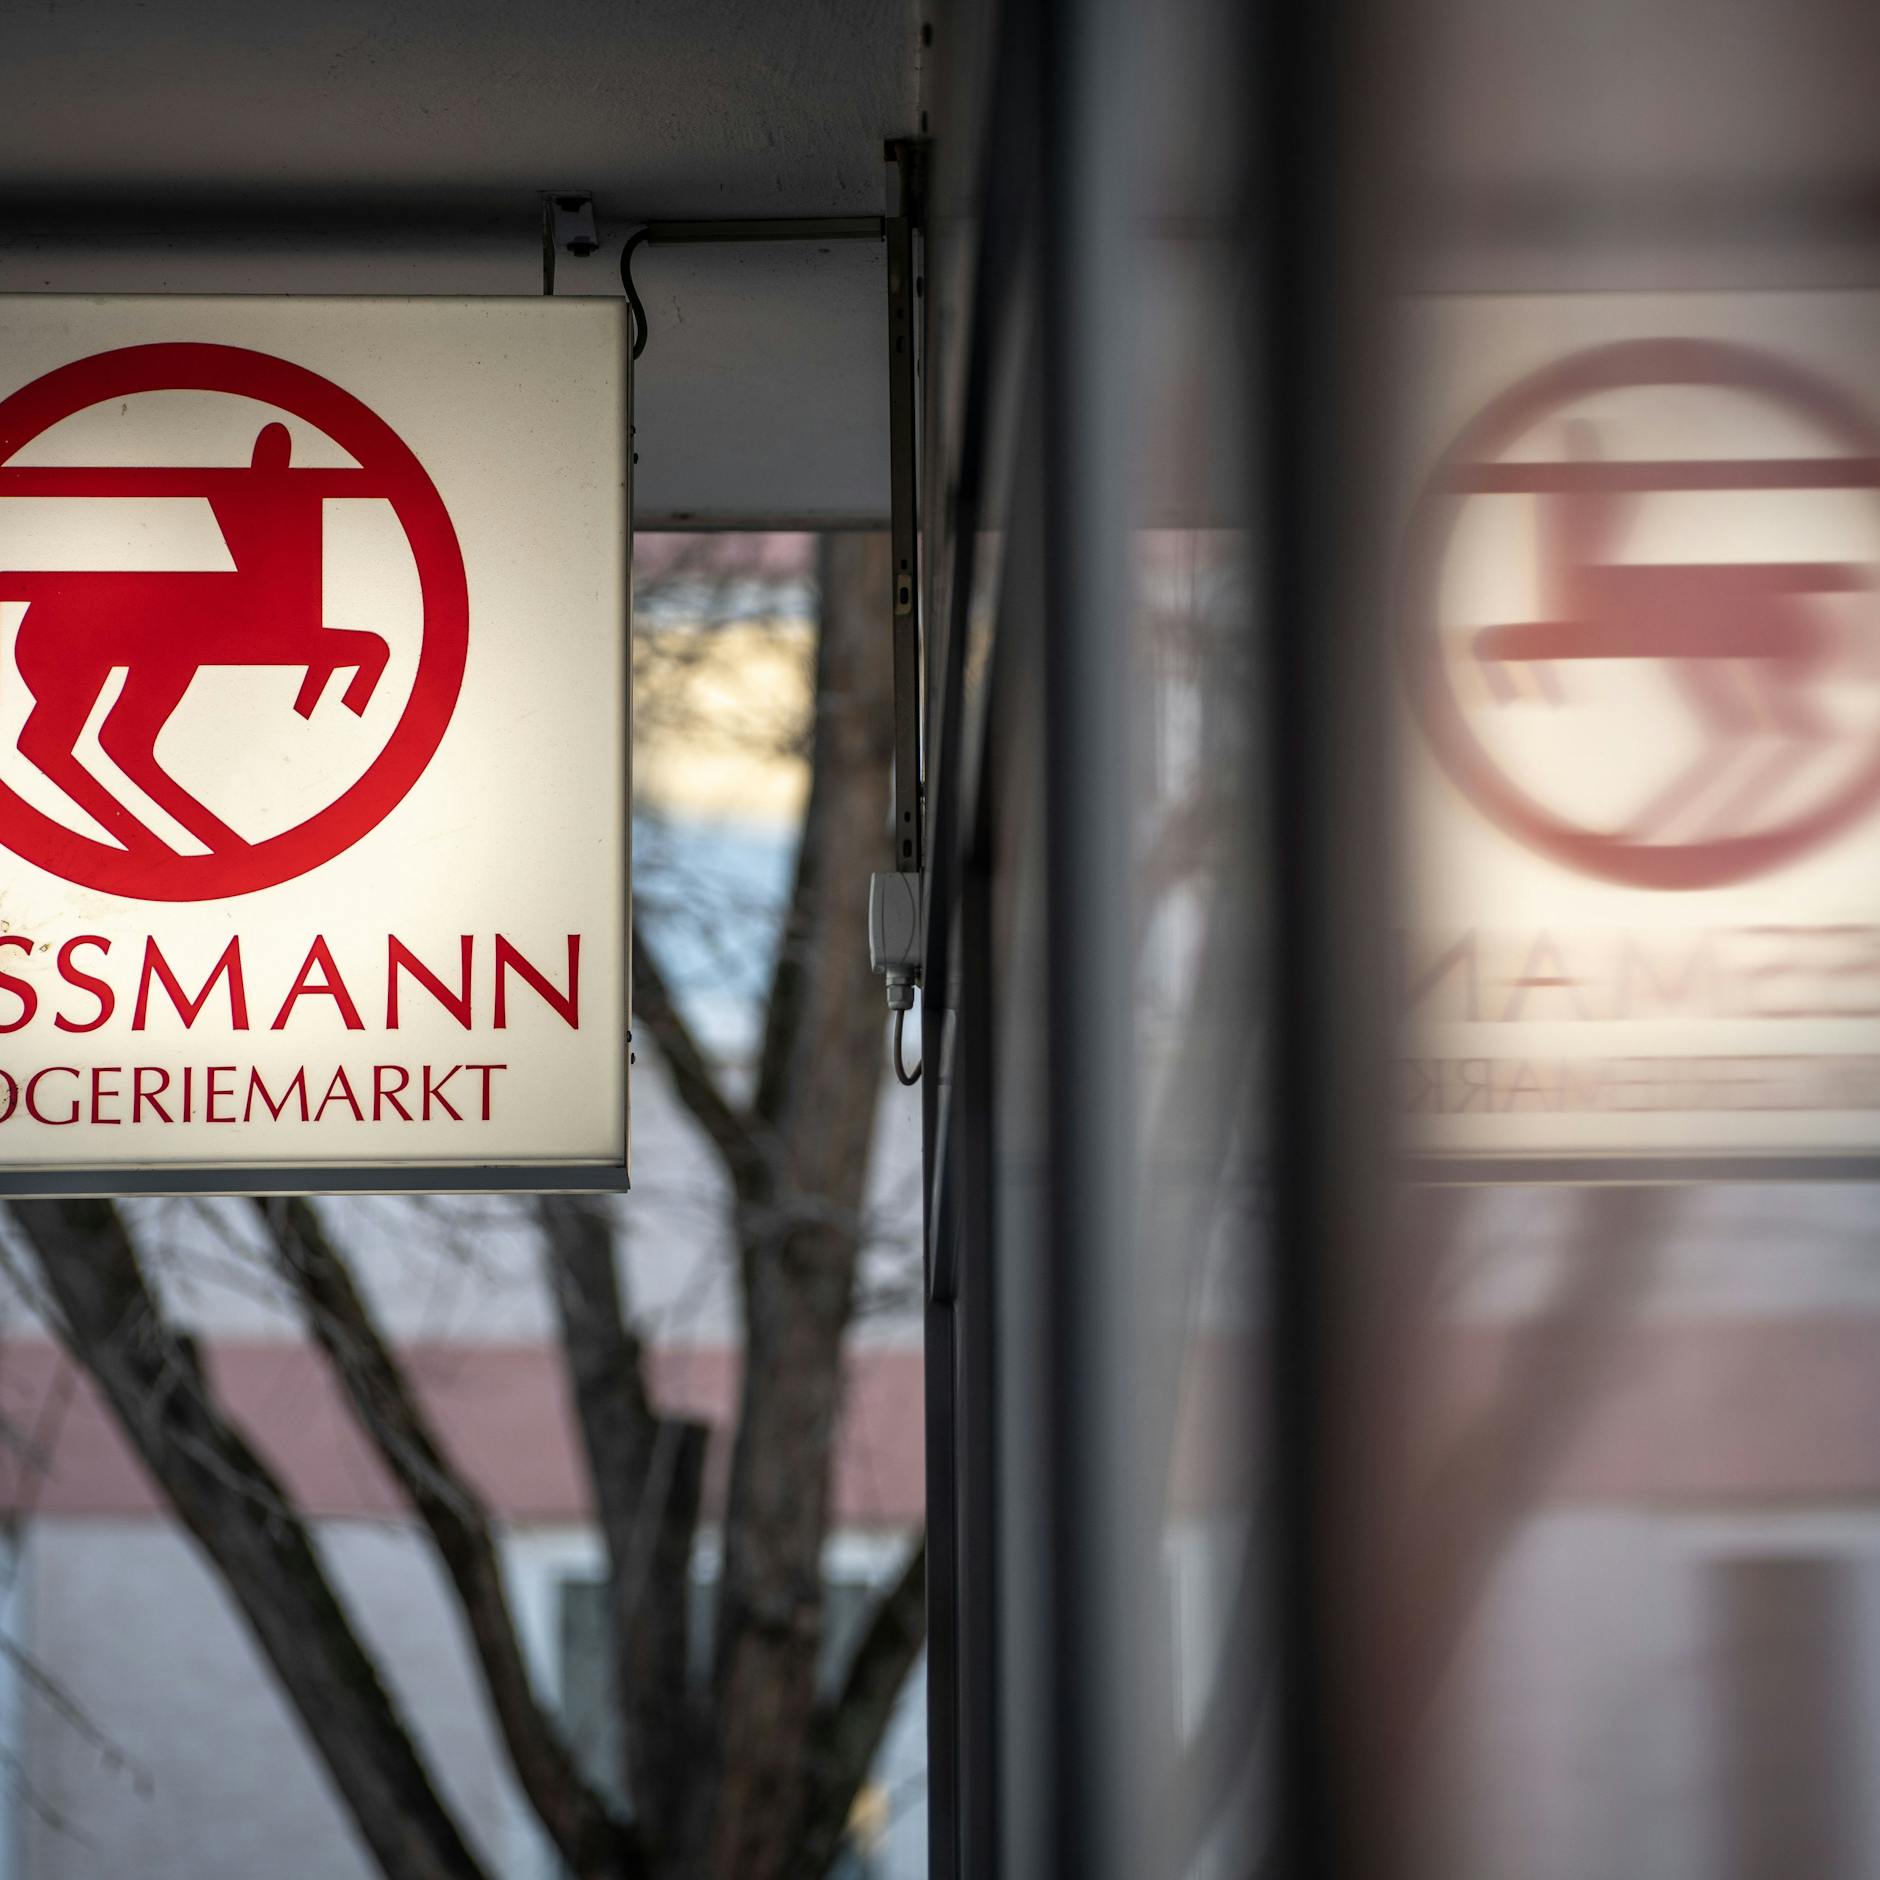 Image - Kaffeekartell: Gericht verhängt Millionen-Geldbuße gegen Rossmann